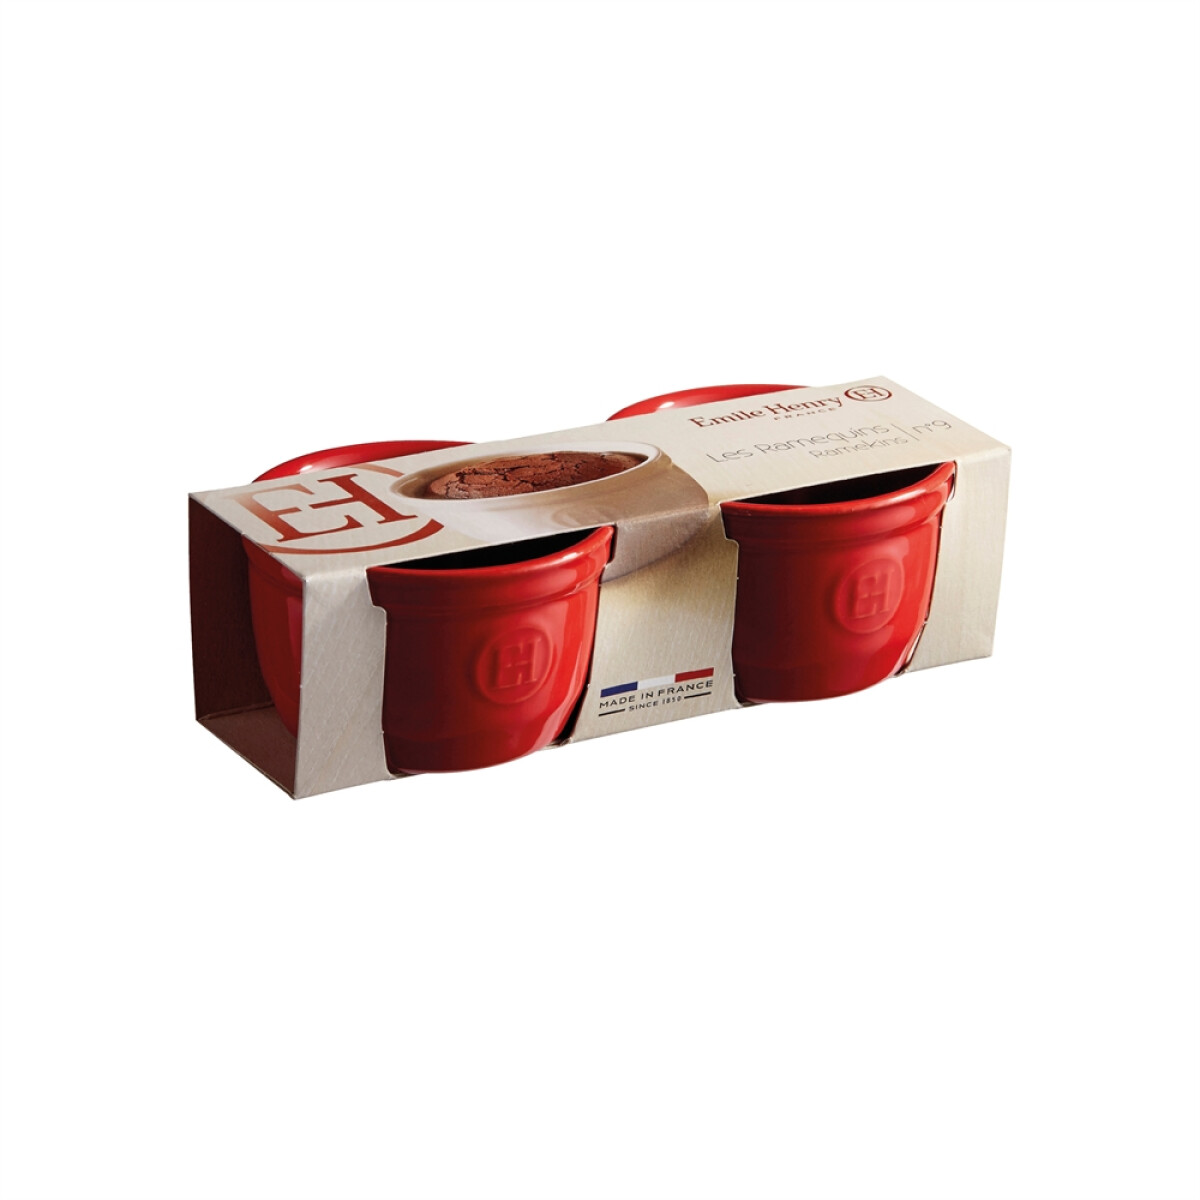 Комплект 2 броя керамични купички / рамекини EMILE HENRY RAMEKINS SET N°9 - цвят червен